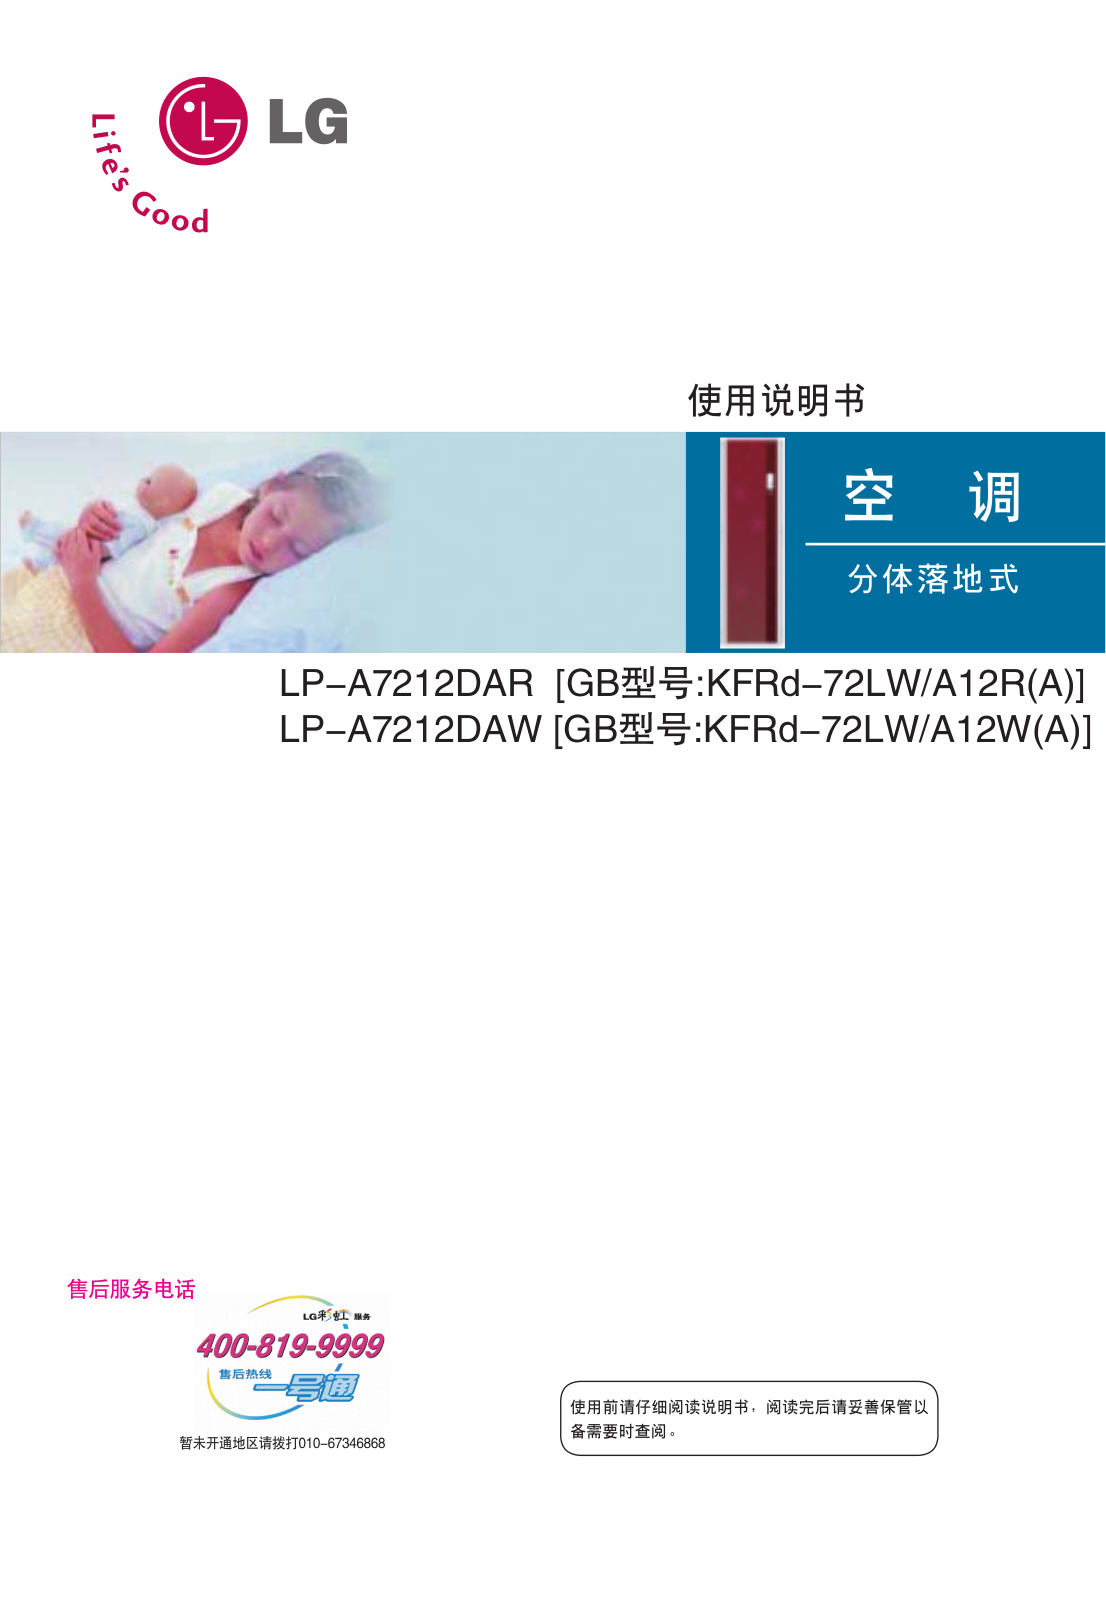 Lg LP-A7212DAR, LP-A7212DAW user Manual